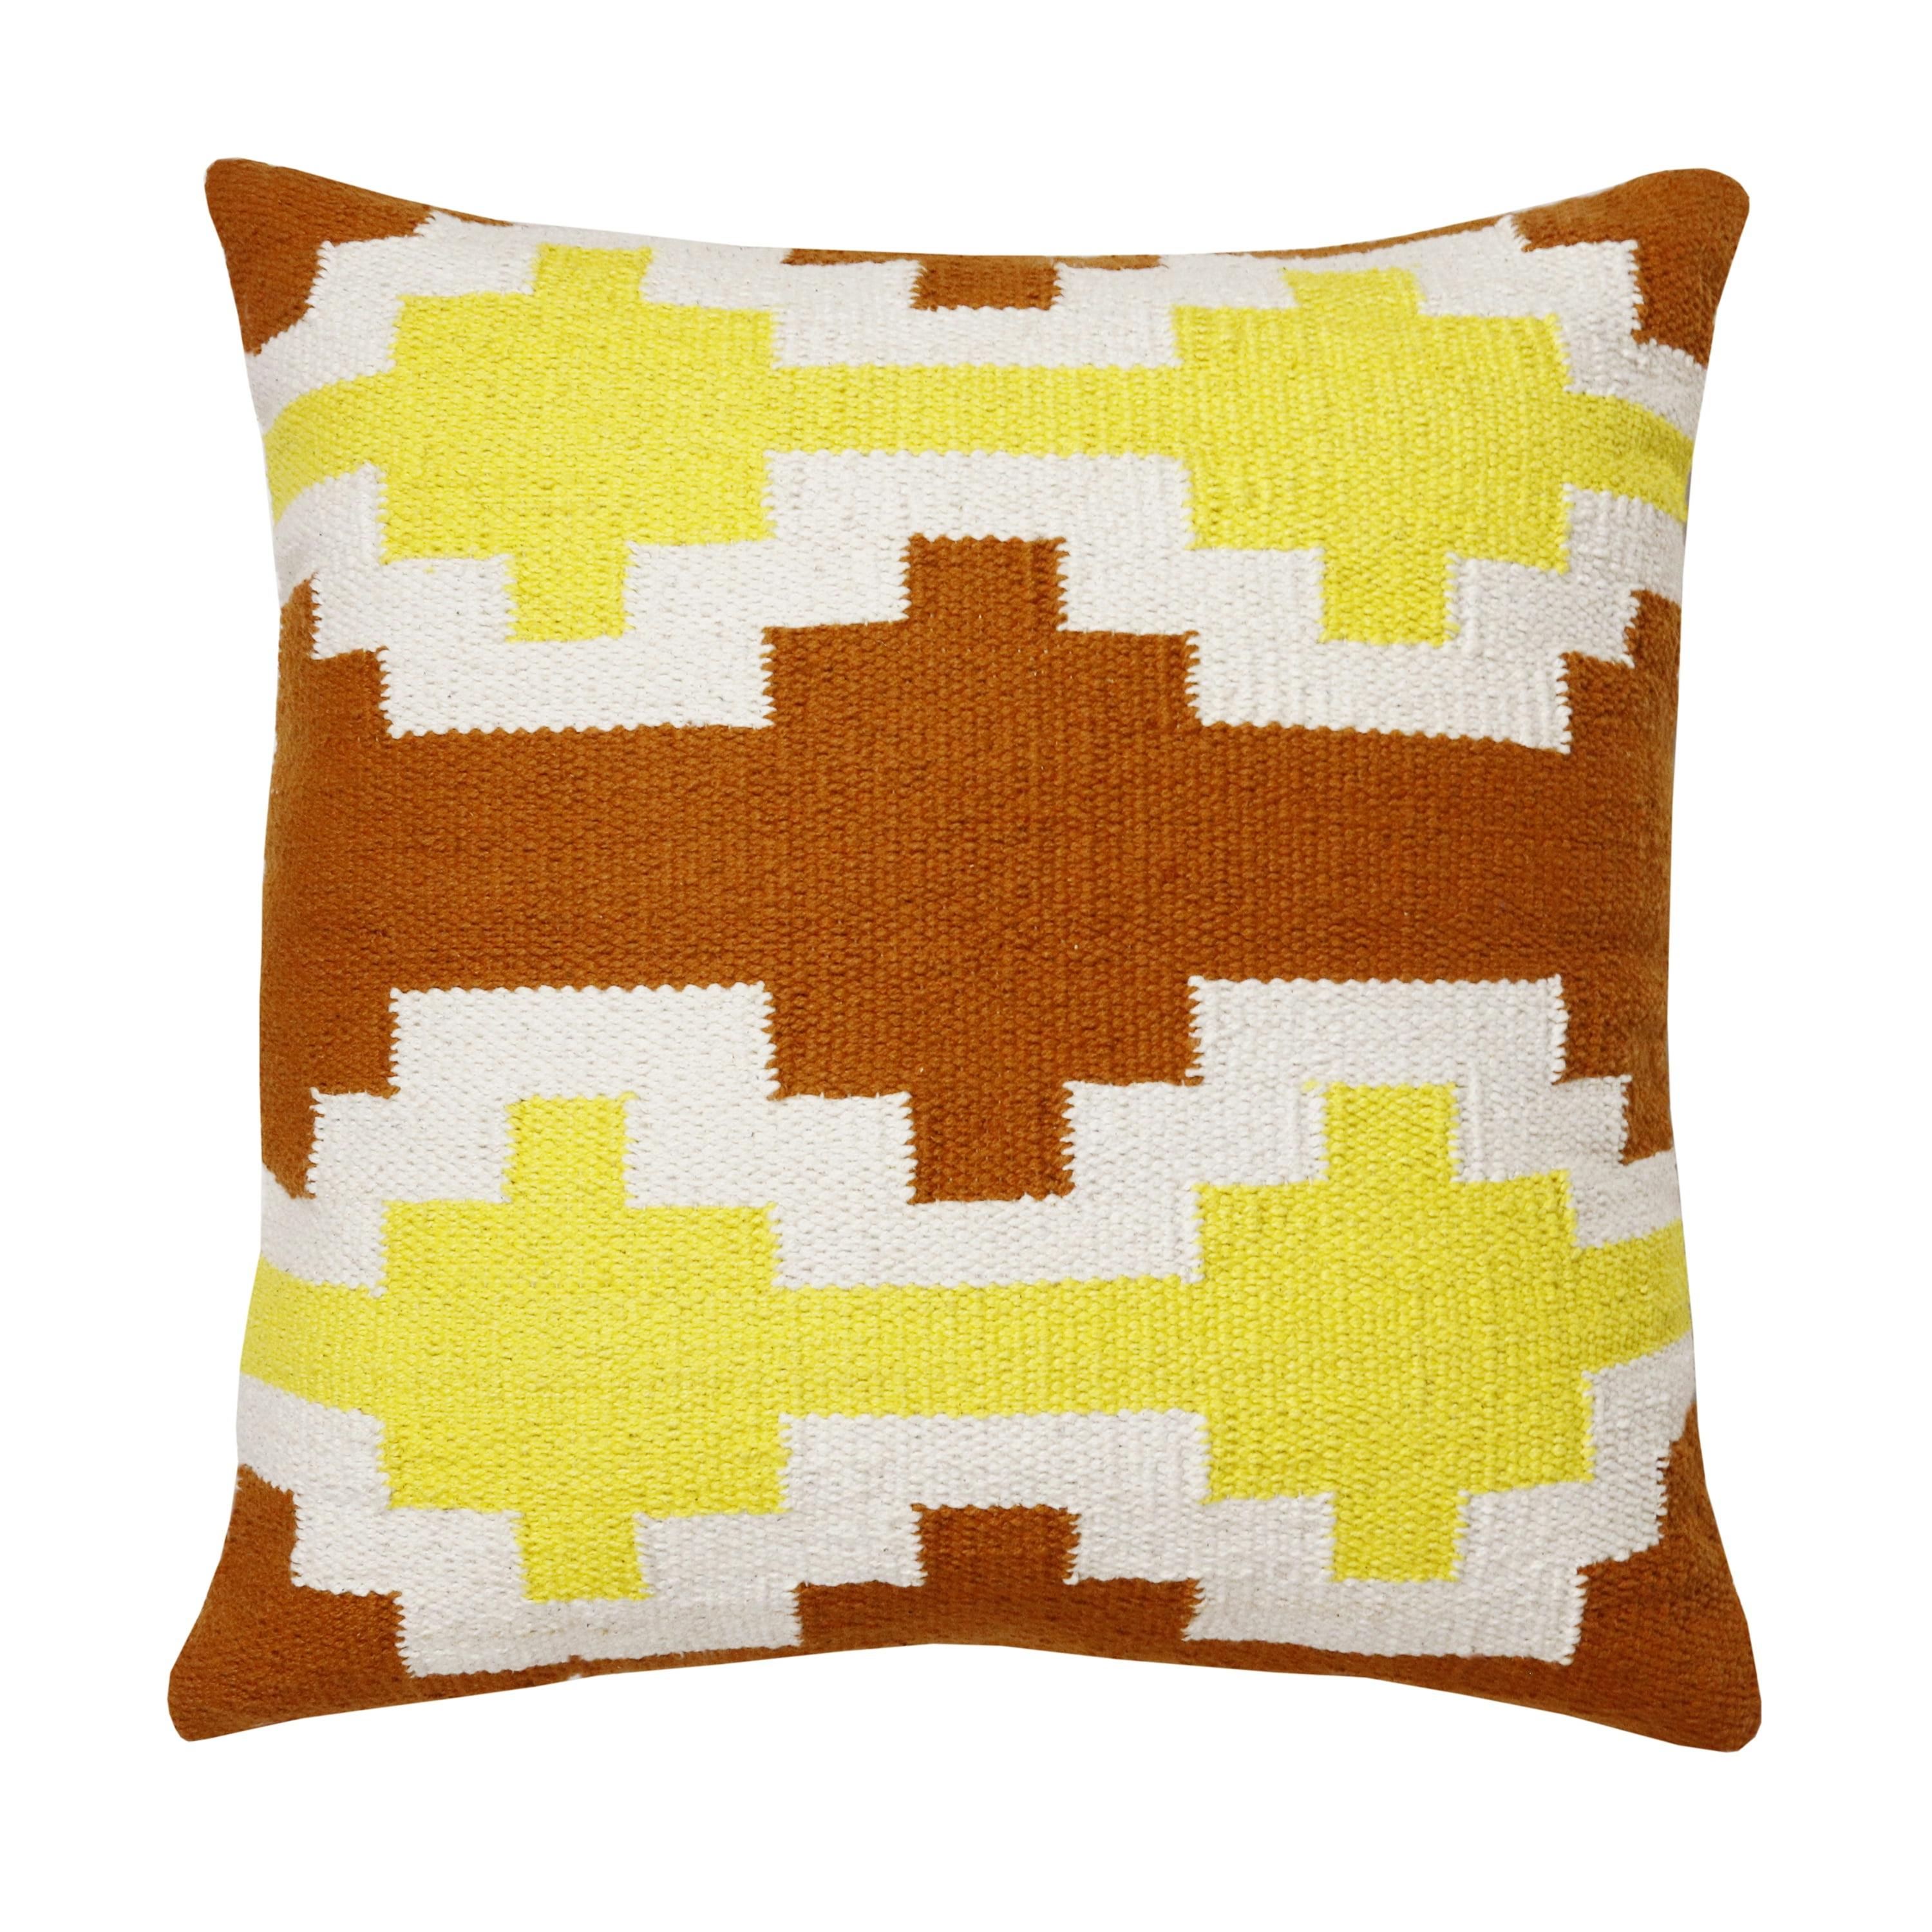 Adobe Orange, Yellow, and White Geometric Lattice 20" Cotton Throw Pillow